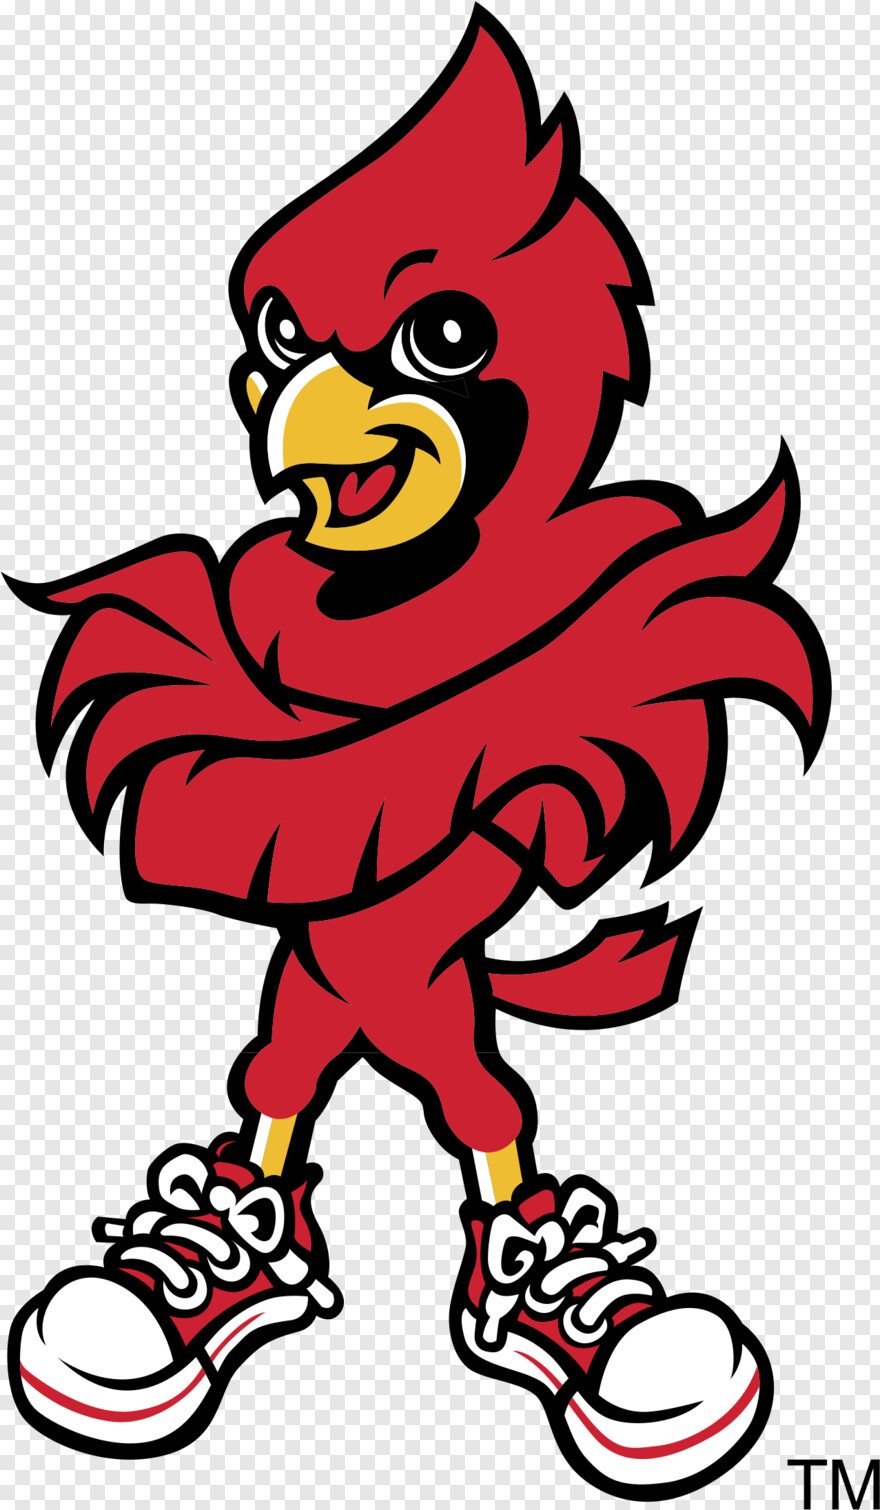 cardinals-logo # 524028